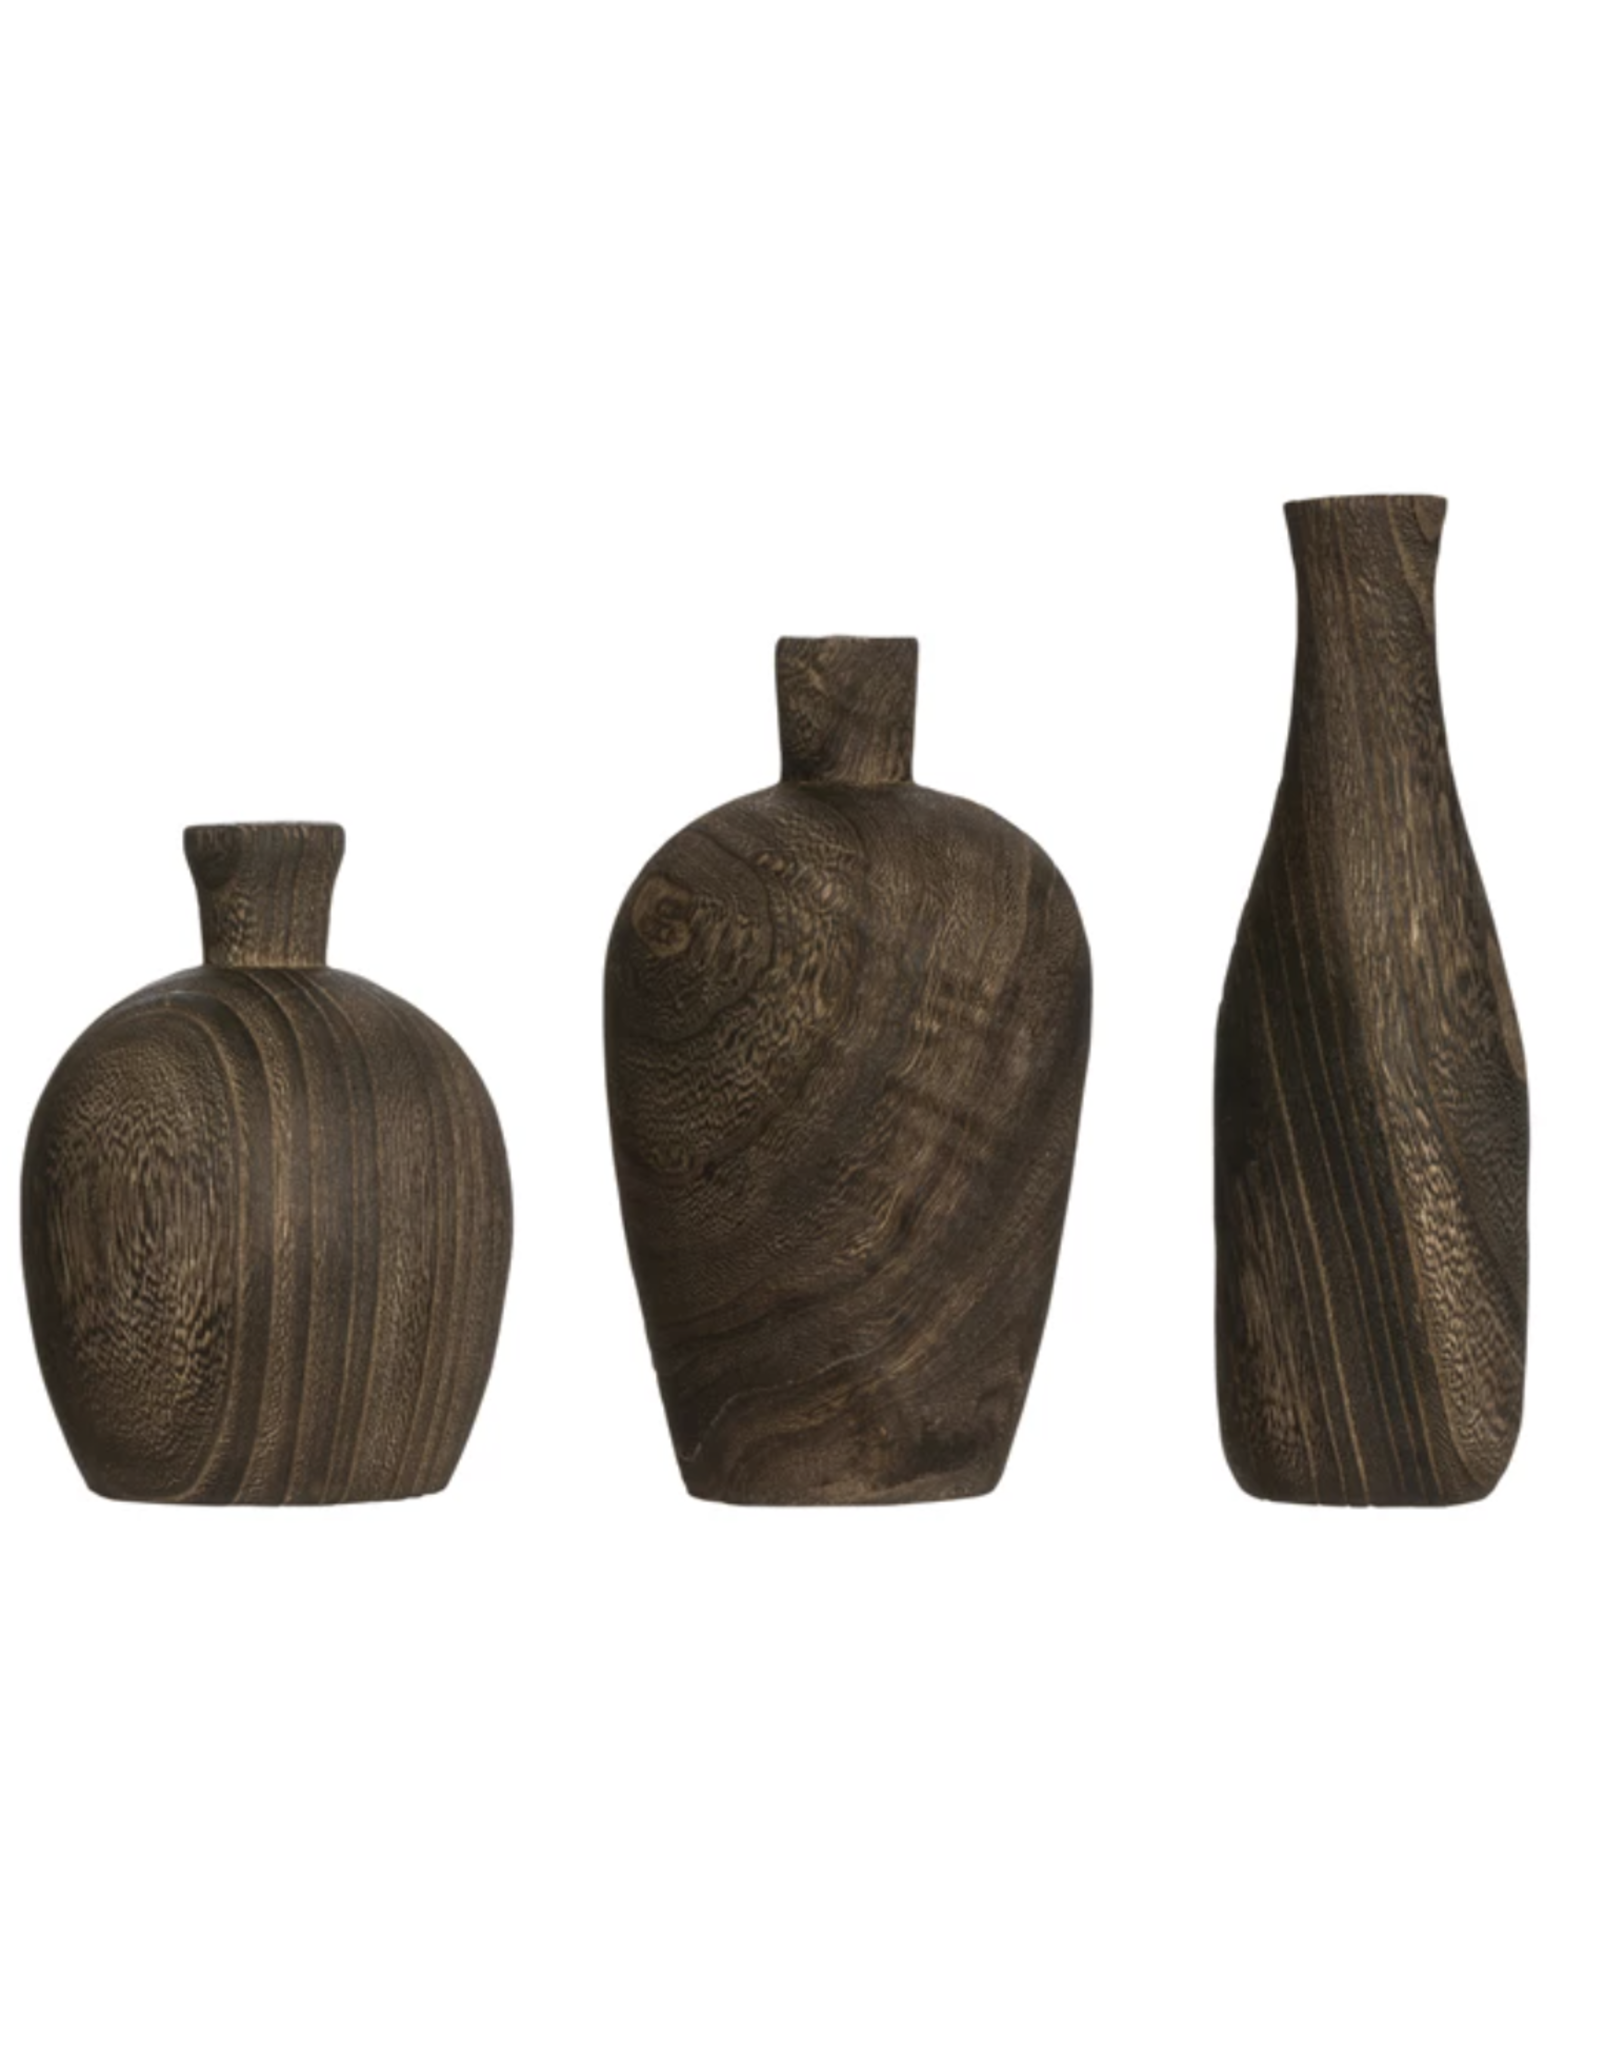 Decorative Wood Vase, Large